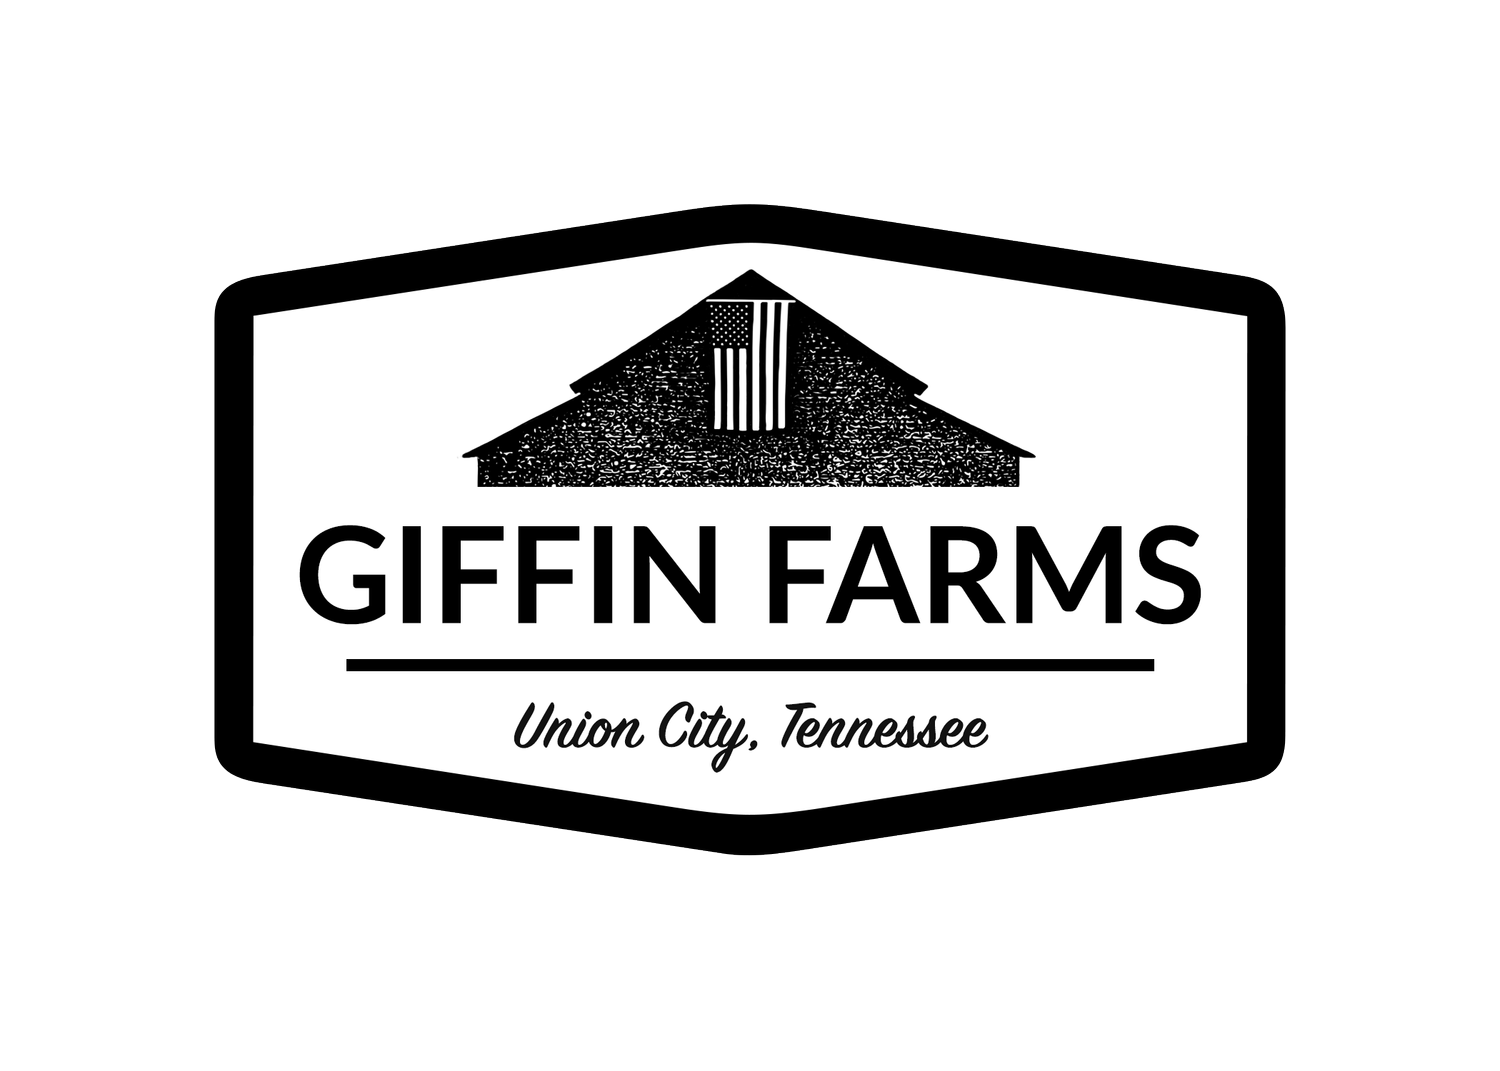 Giffin Farms